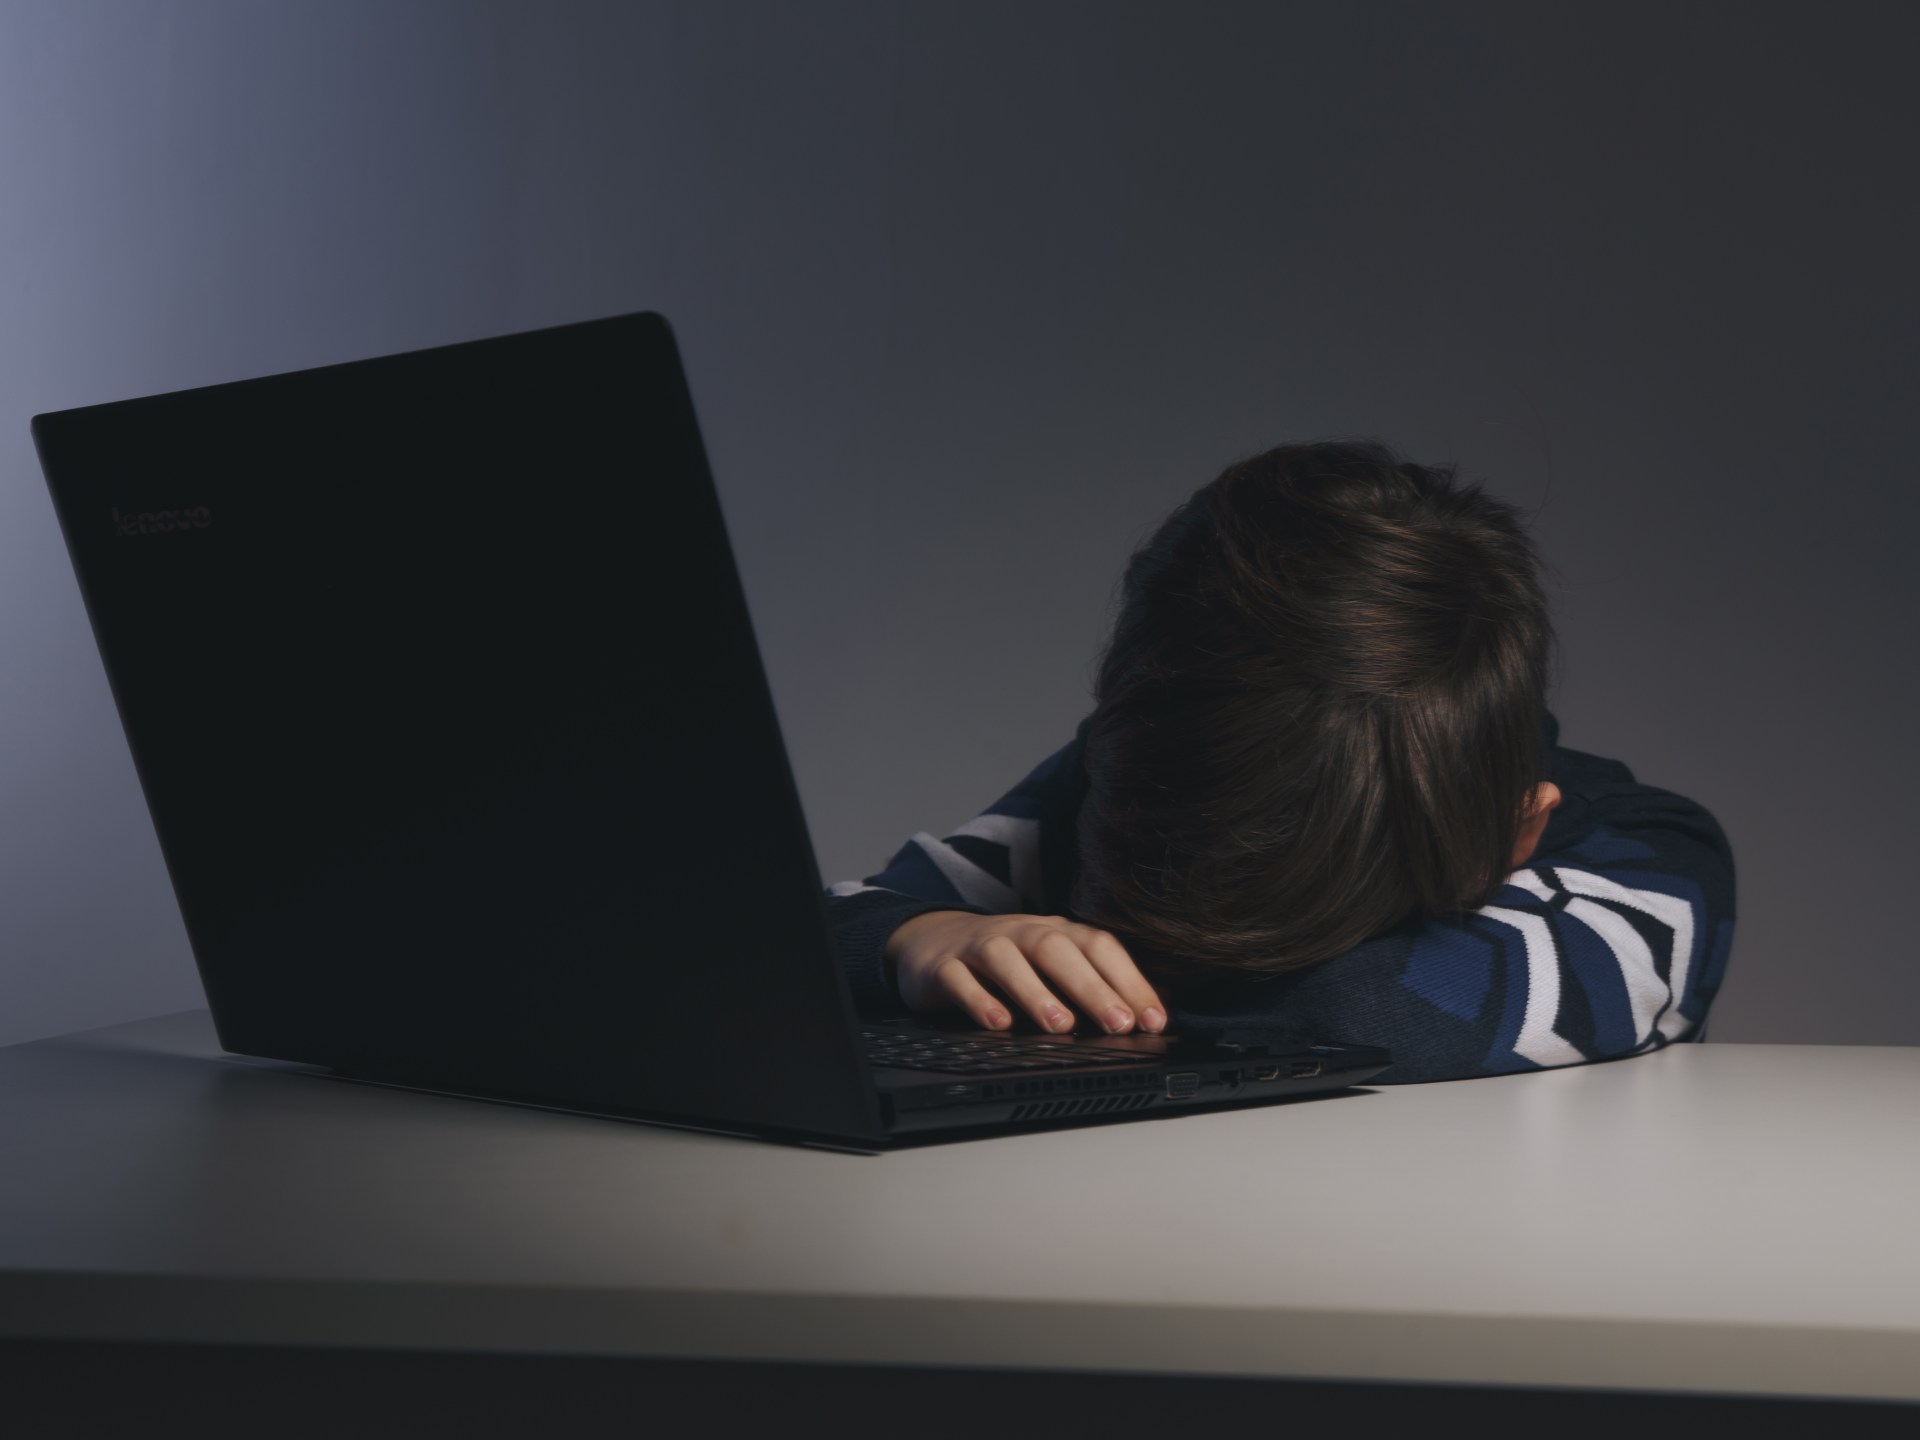 دراسة: 300 مليون طفل يقعون ضحايا للاستغلال الجنسي عبر الإنترنت سنويا | أسرة – البوكس نيوز